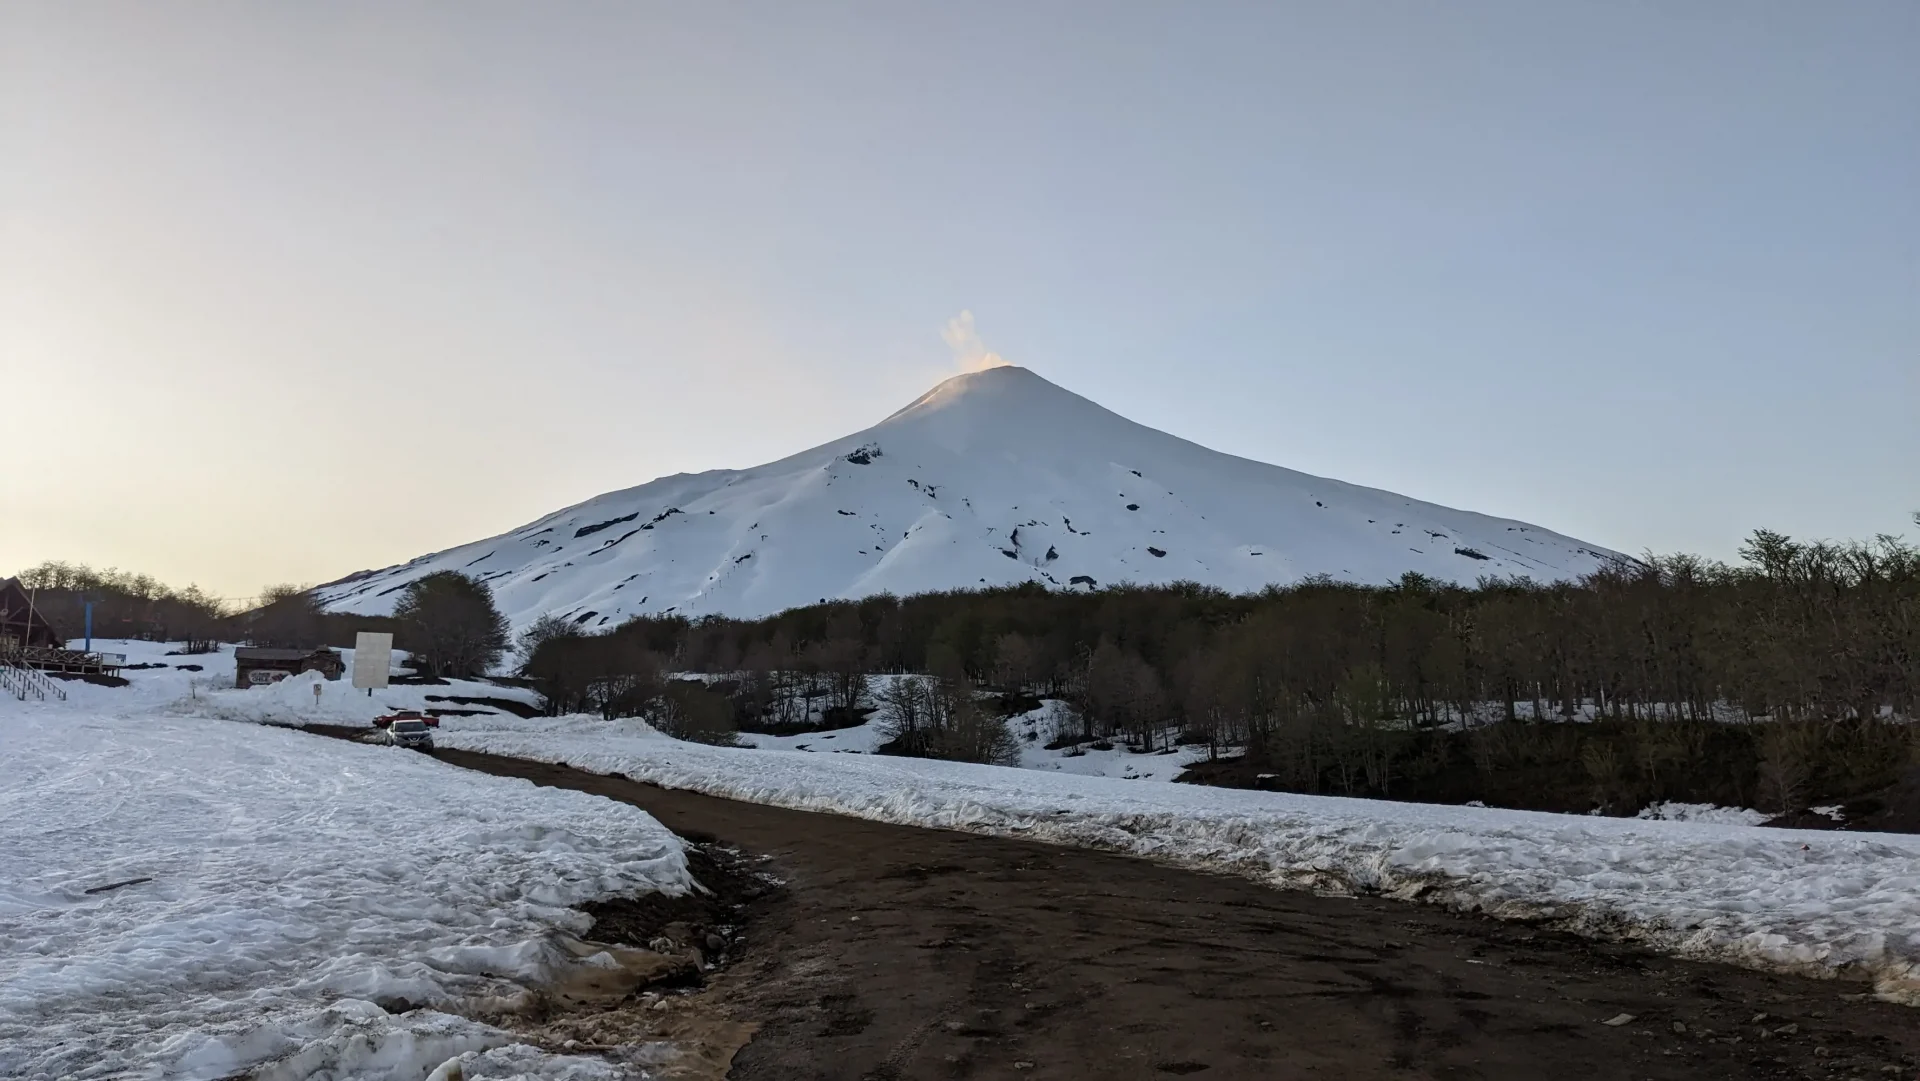 foto del volcán villarrica